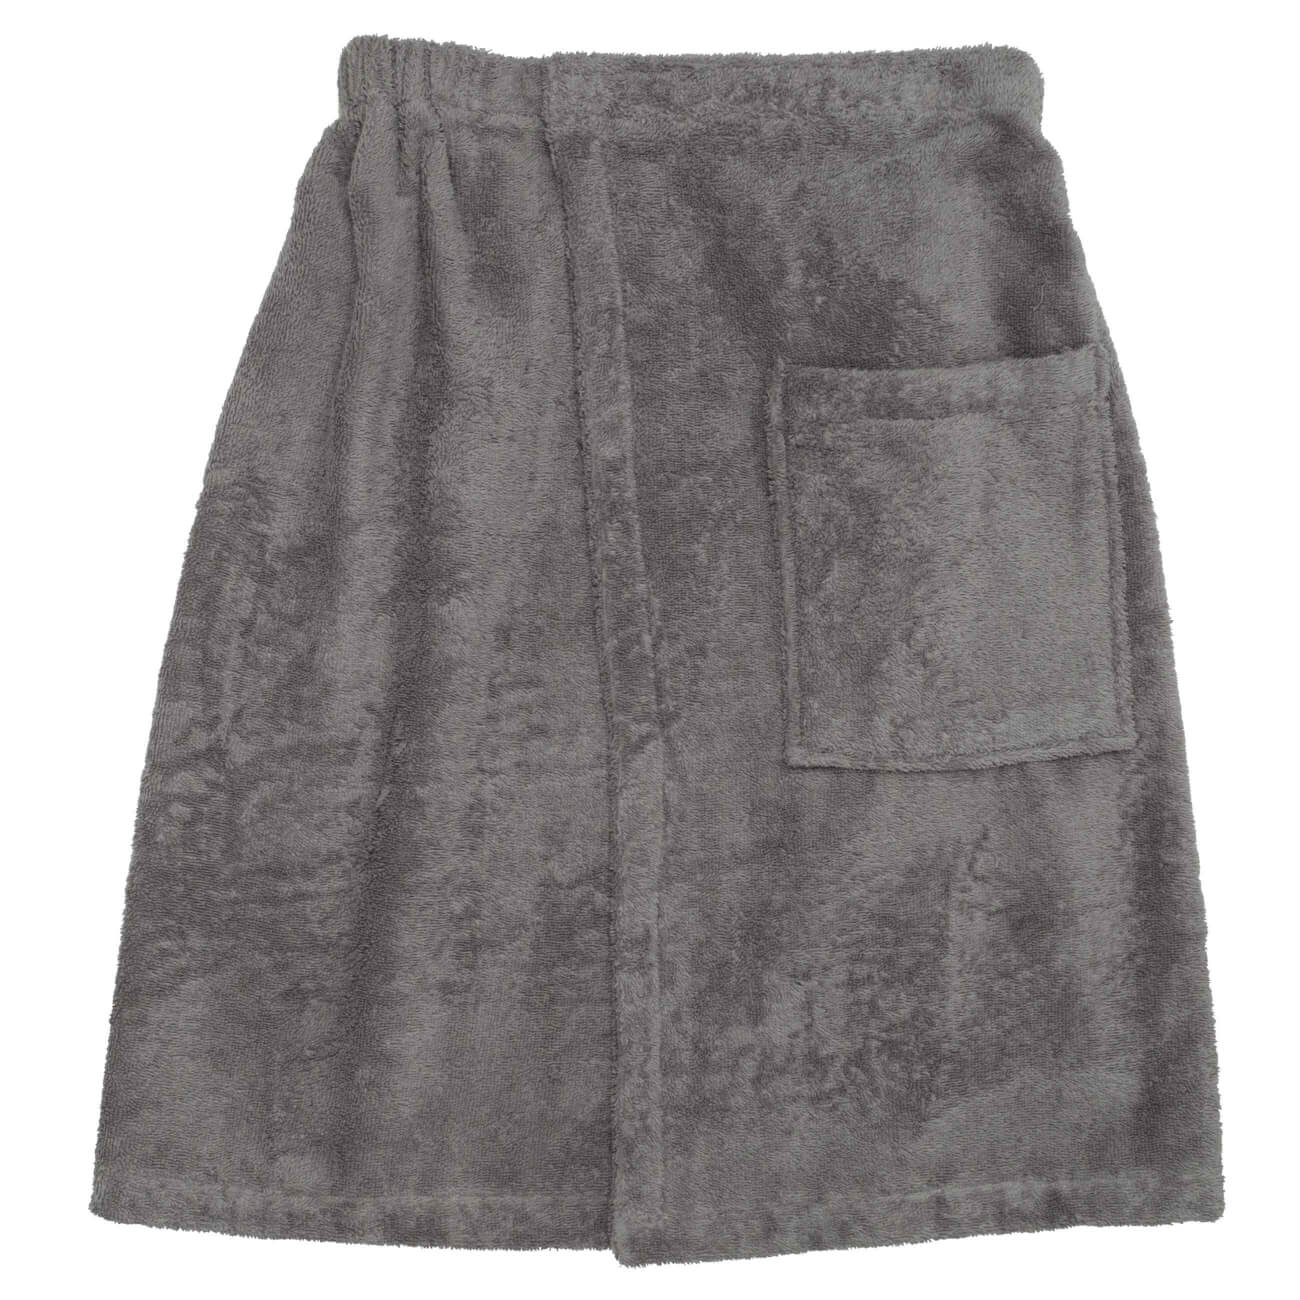 Полотенце-килт мужское, 70х160 см, на липучке, хлопок, темно-серое, Spa towel кошелек на липучке